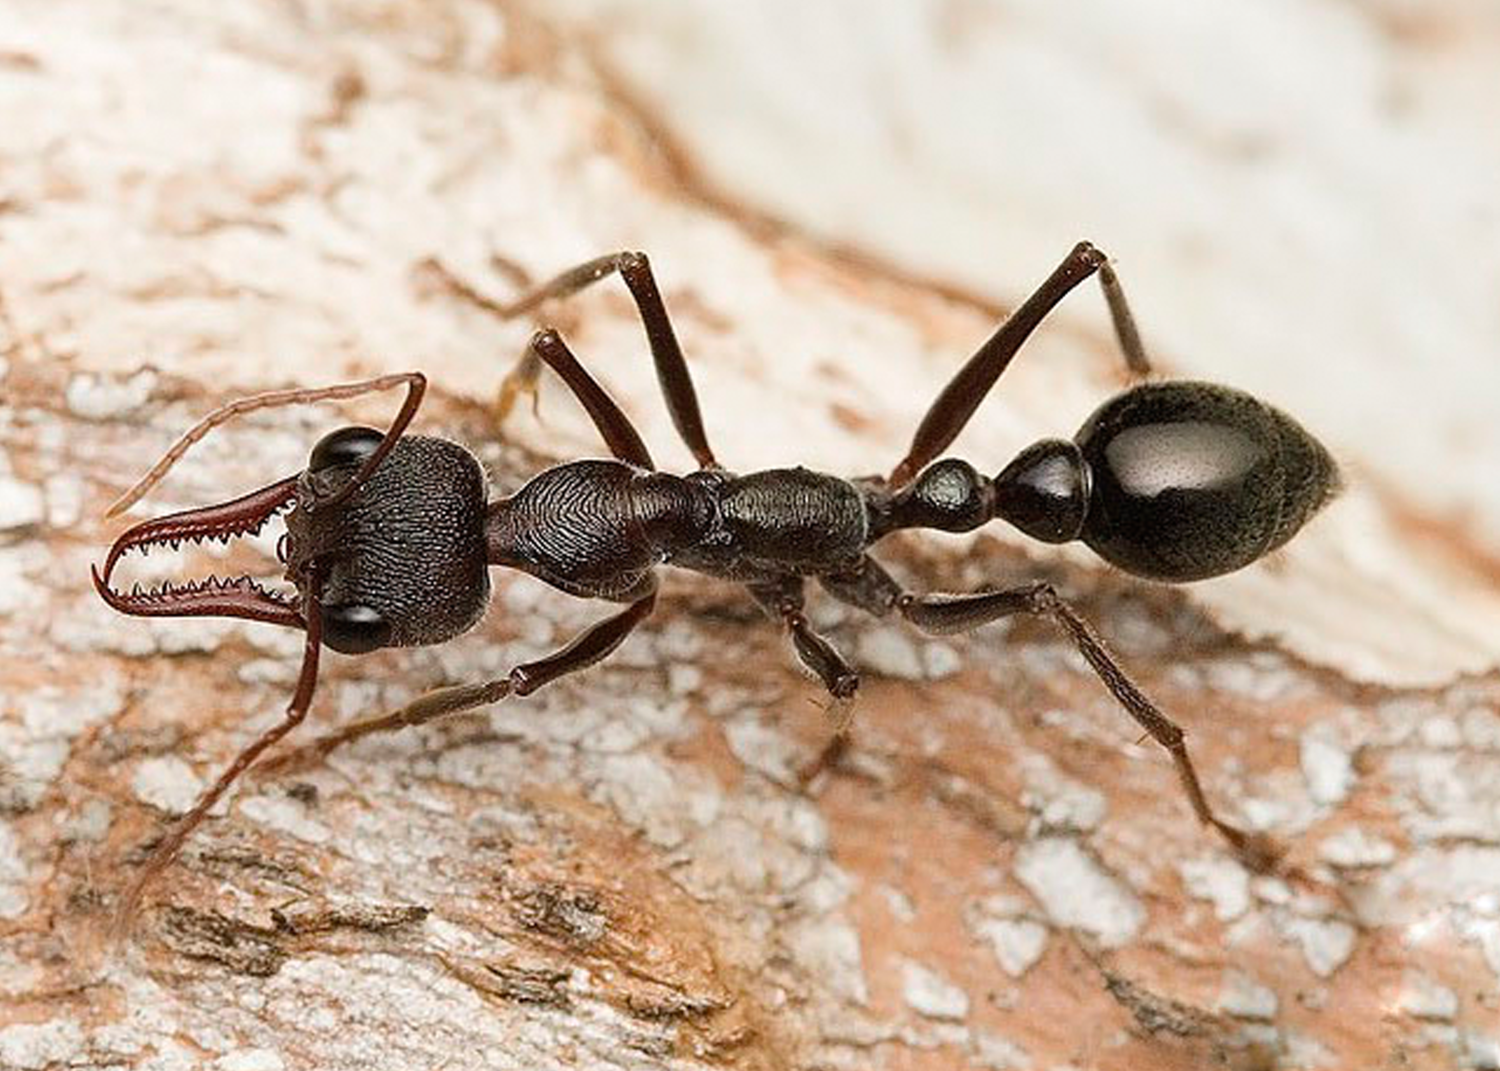 Название армейского муравья. Myrmecia brevinoda. Myrmecia pyriformis. Муравей мирмеция приформис. Муравьи Dinoponera gigantea.